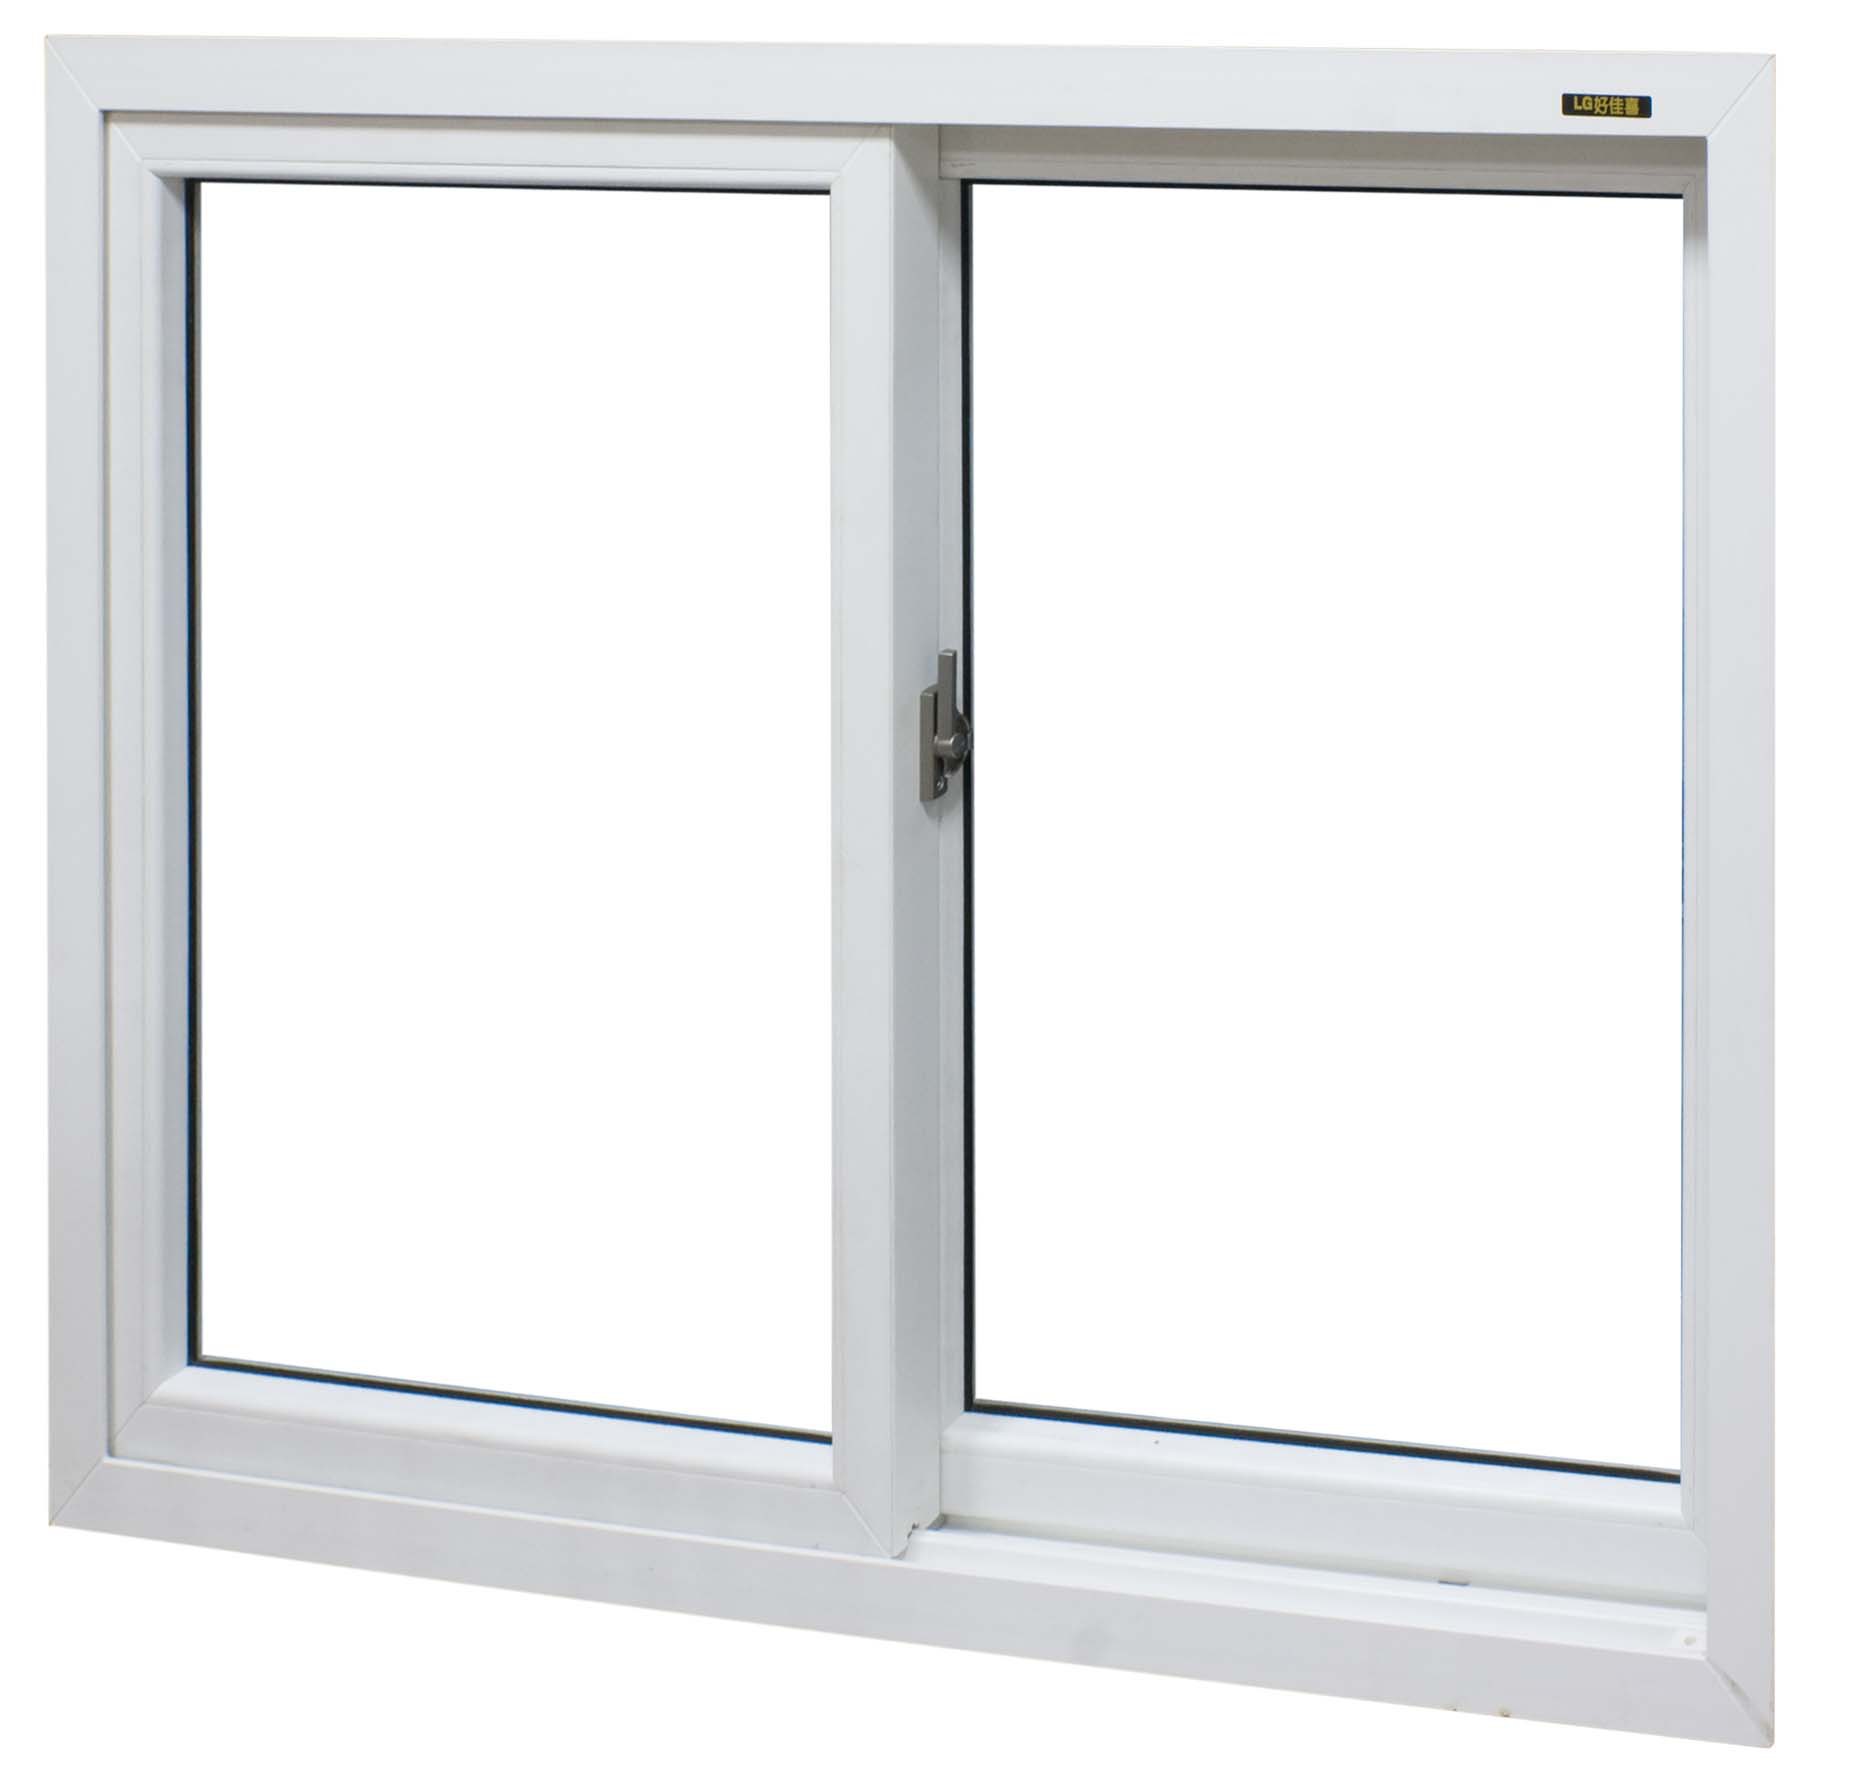 维博门窗专业加工upvc门窗,pvc门窗,塑钢门窗